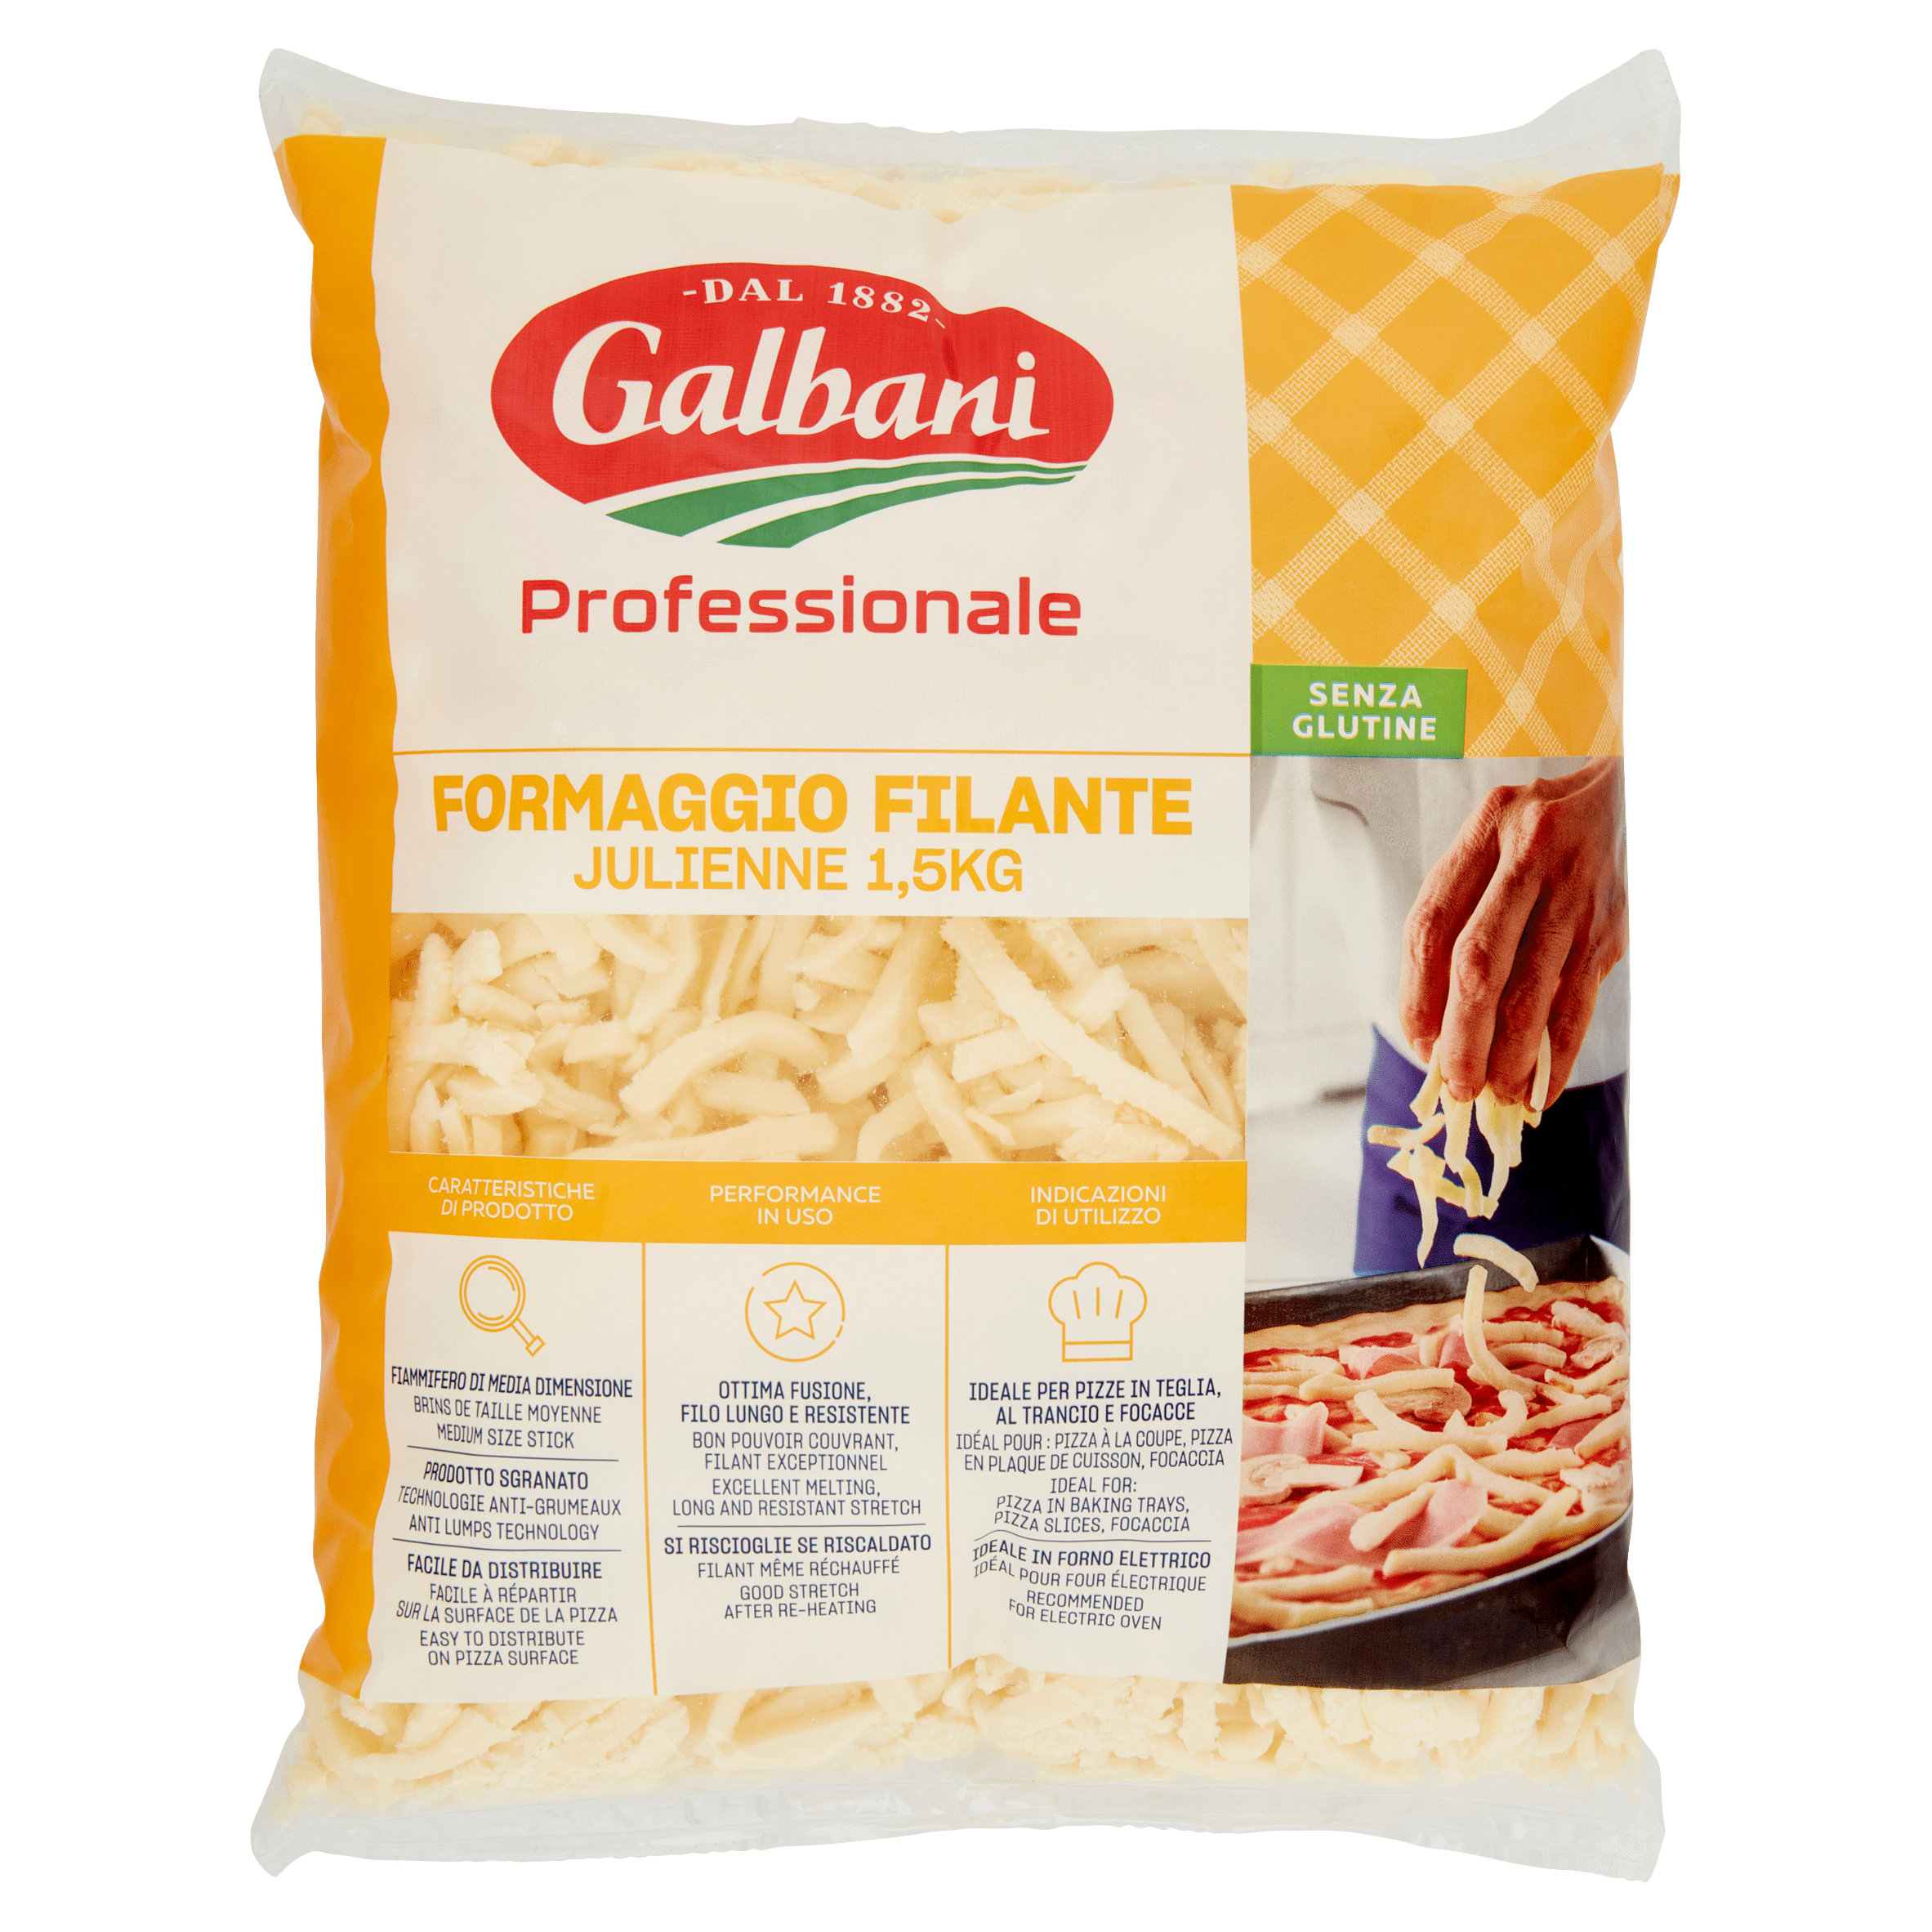 Mozzarella per Pizza Senza Lattosio - Galbani